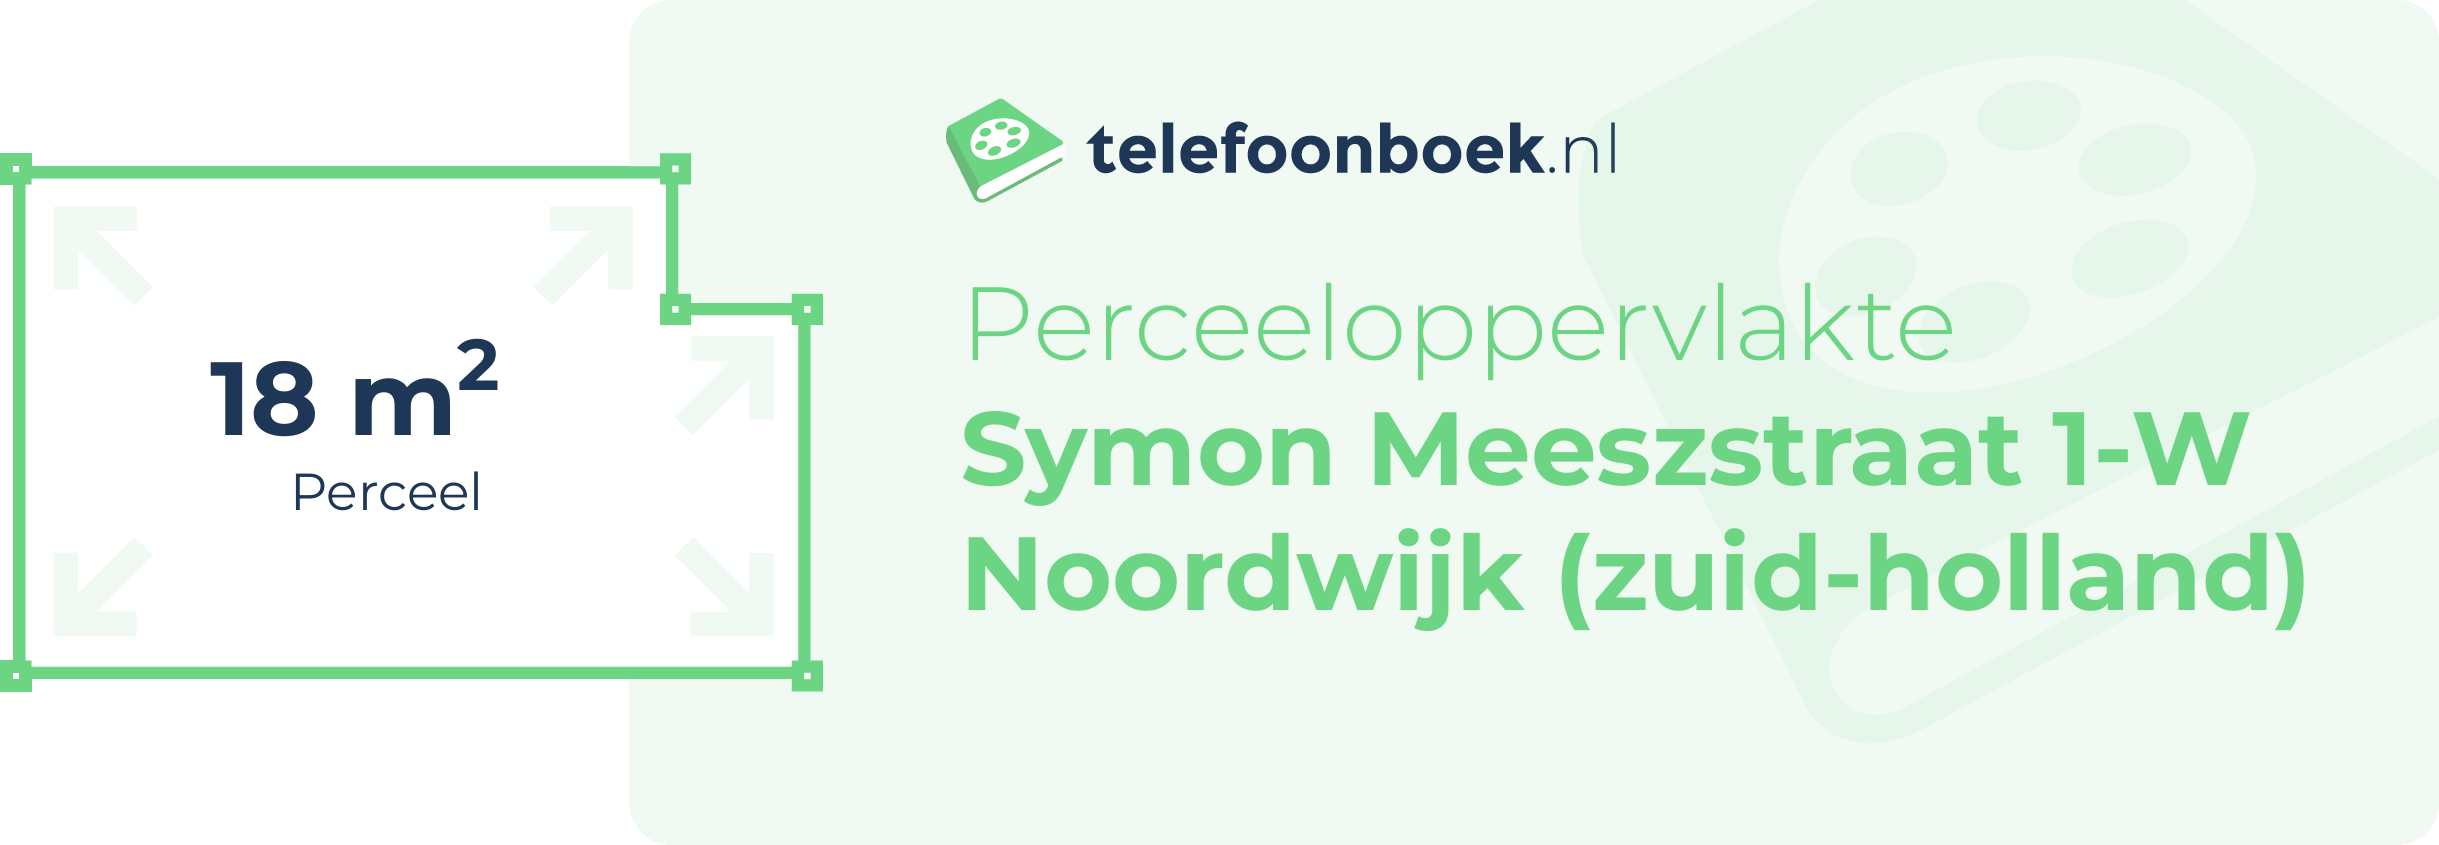 Perceeloppervlakte Symon Meeszstraat 1-W Noordwijk (Zuid-Holland)